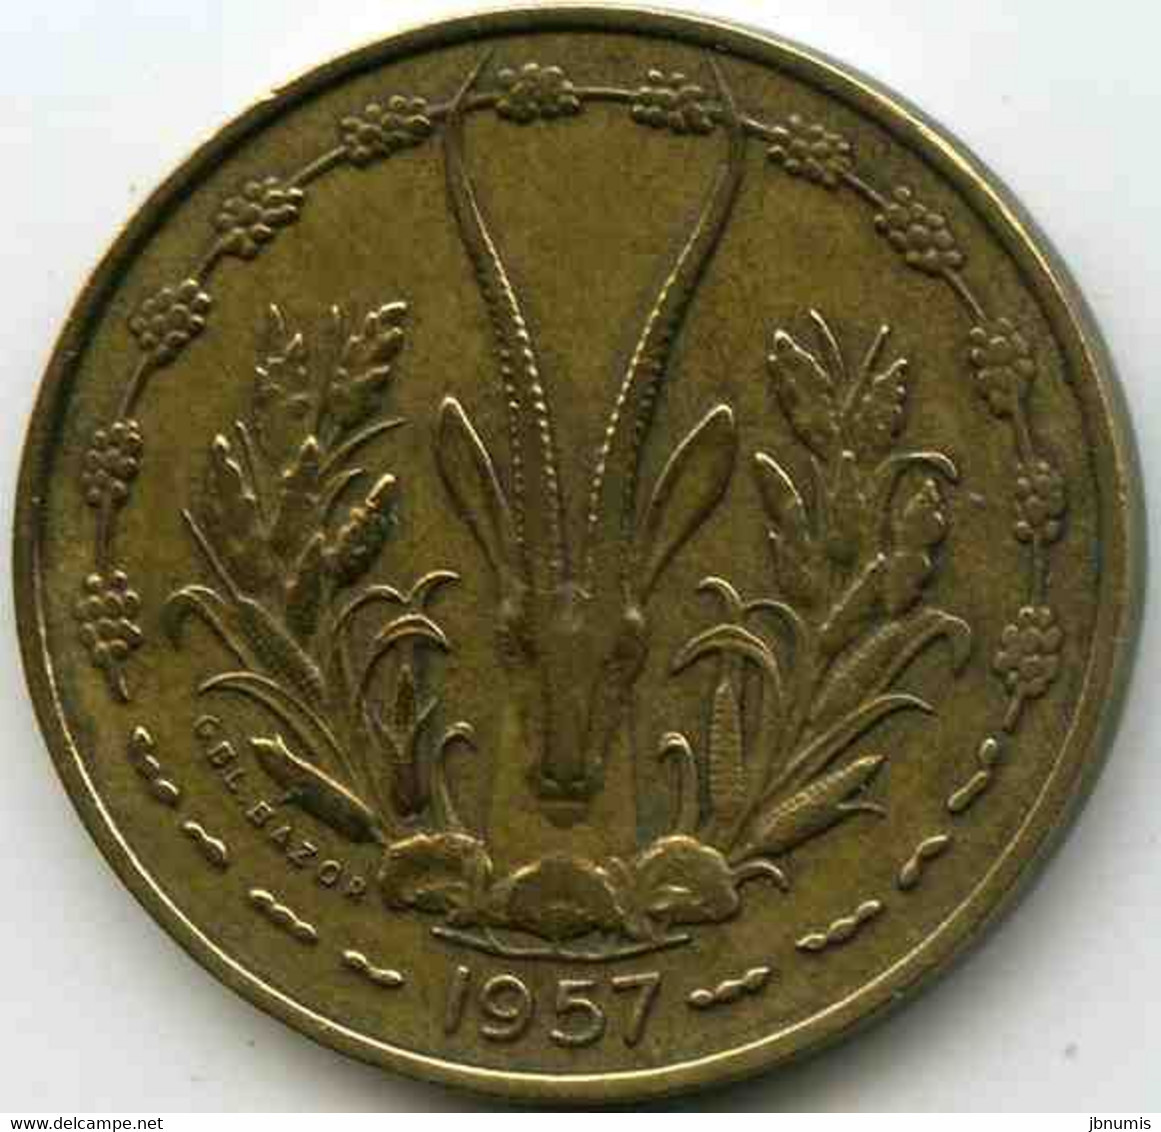 France Afrique Occidentale West Africa Togo 10 Francs 1957 KM 8 - French West Africa